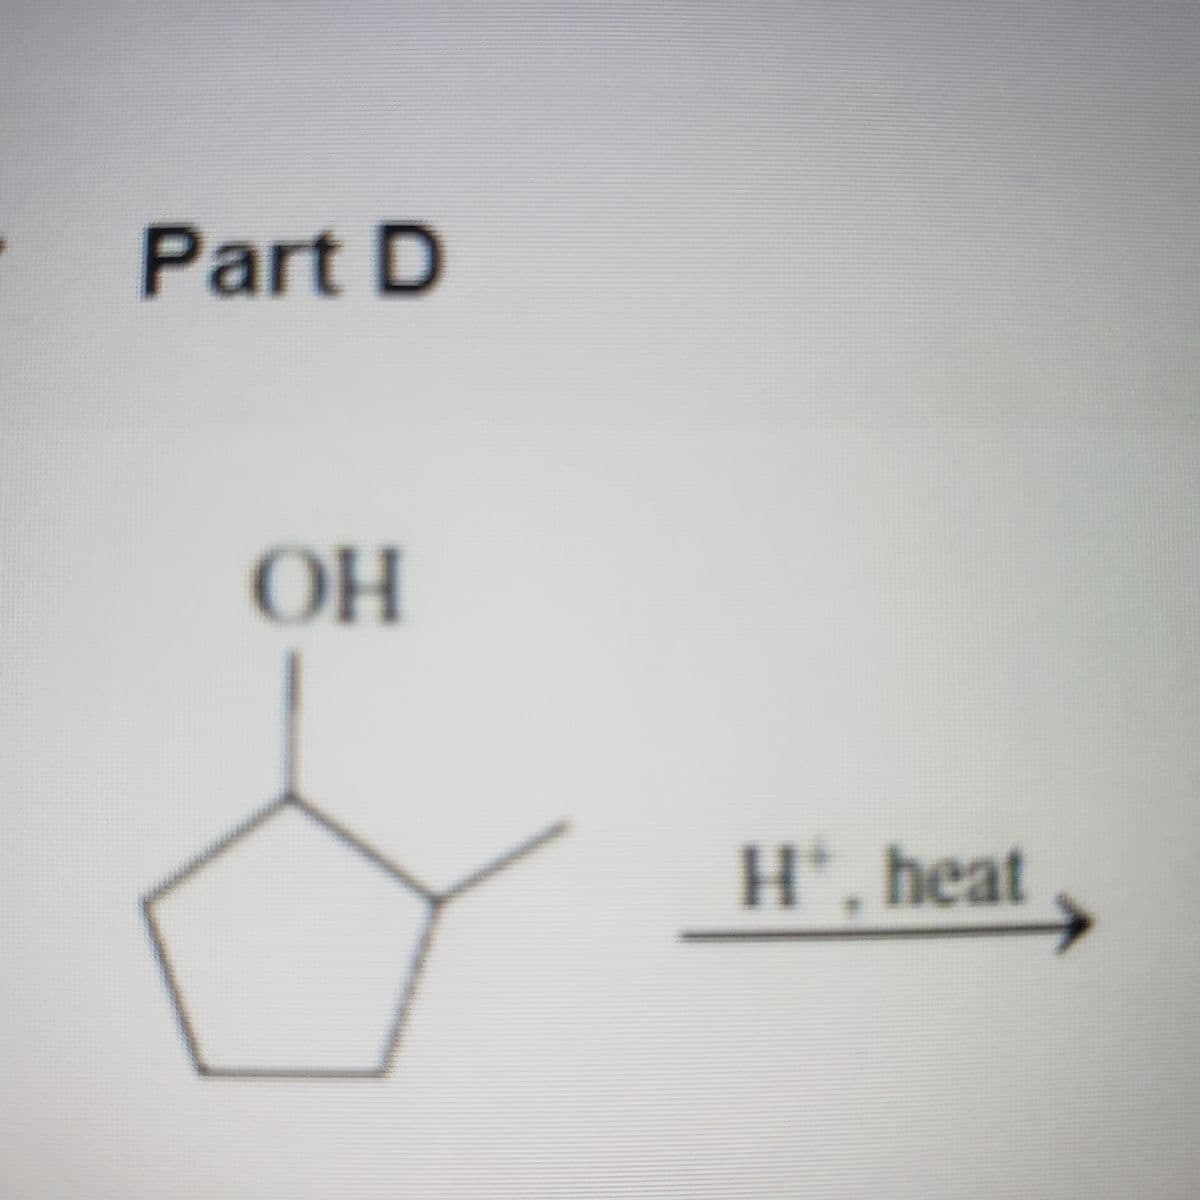 Part D
OH
H', heat
%3D
